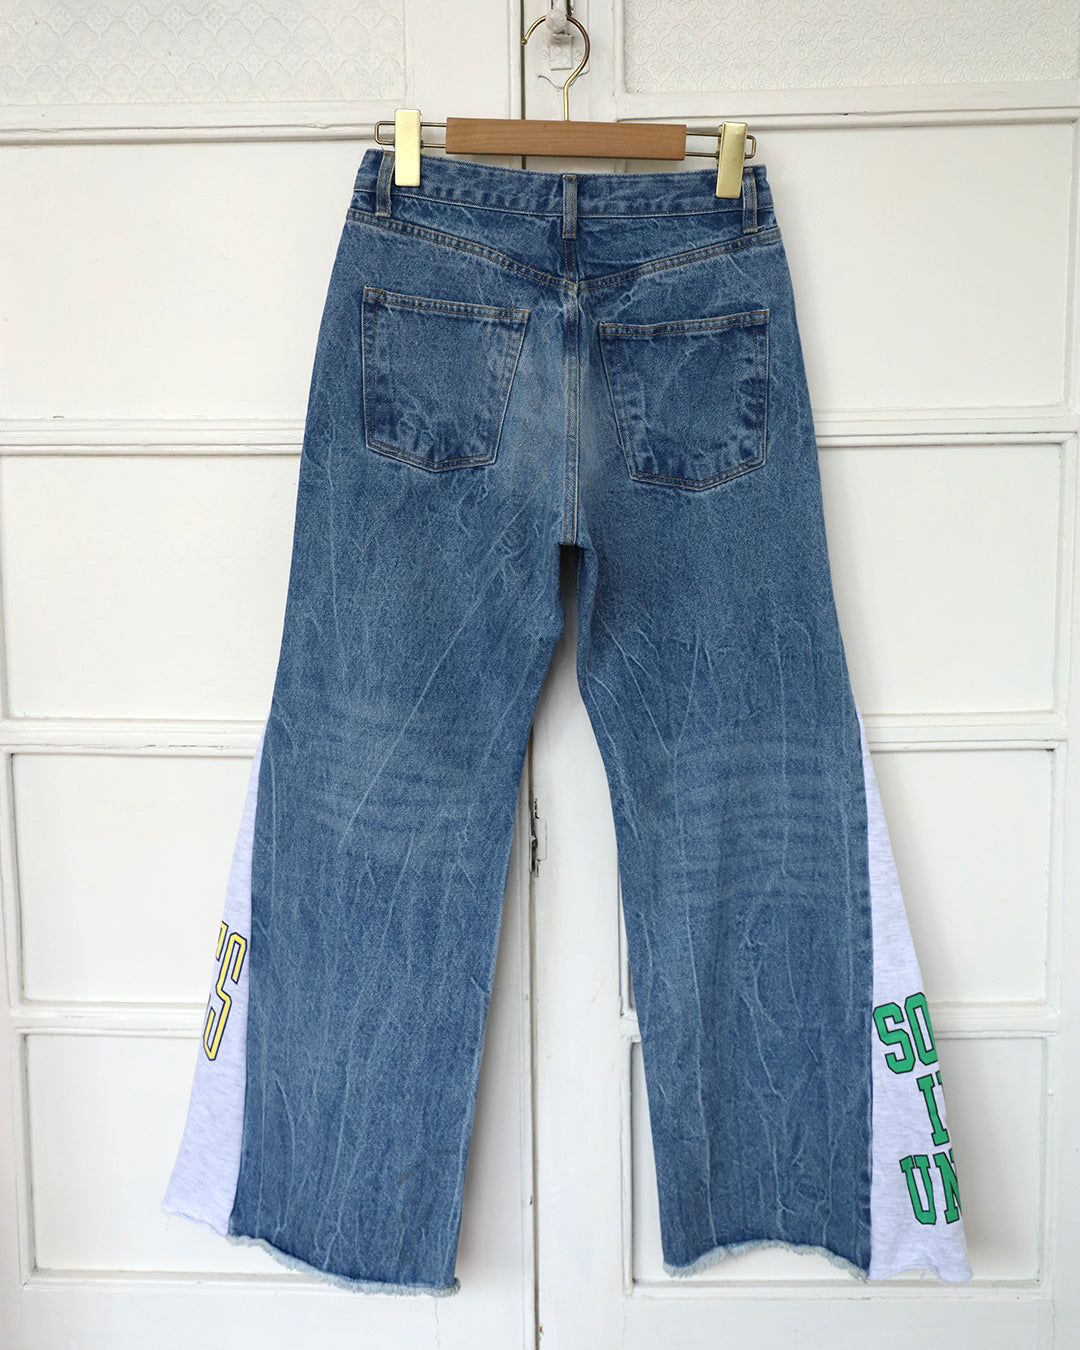 Patchwork Jeans (Size S-L)